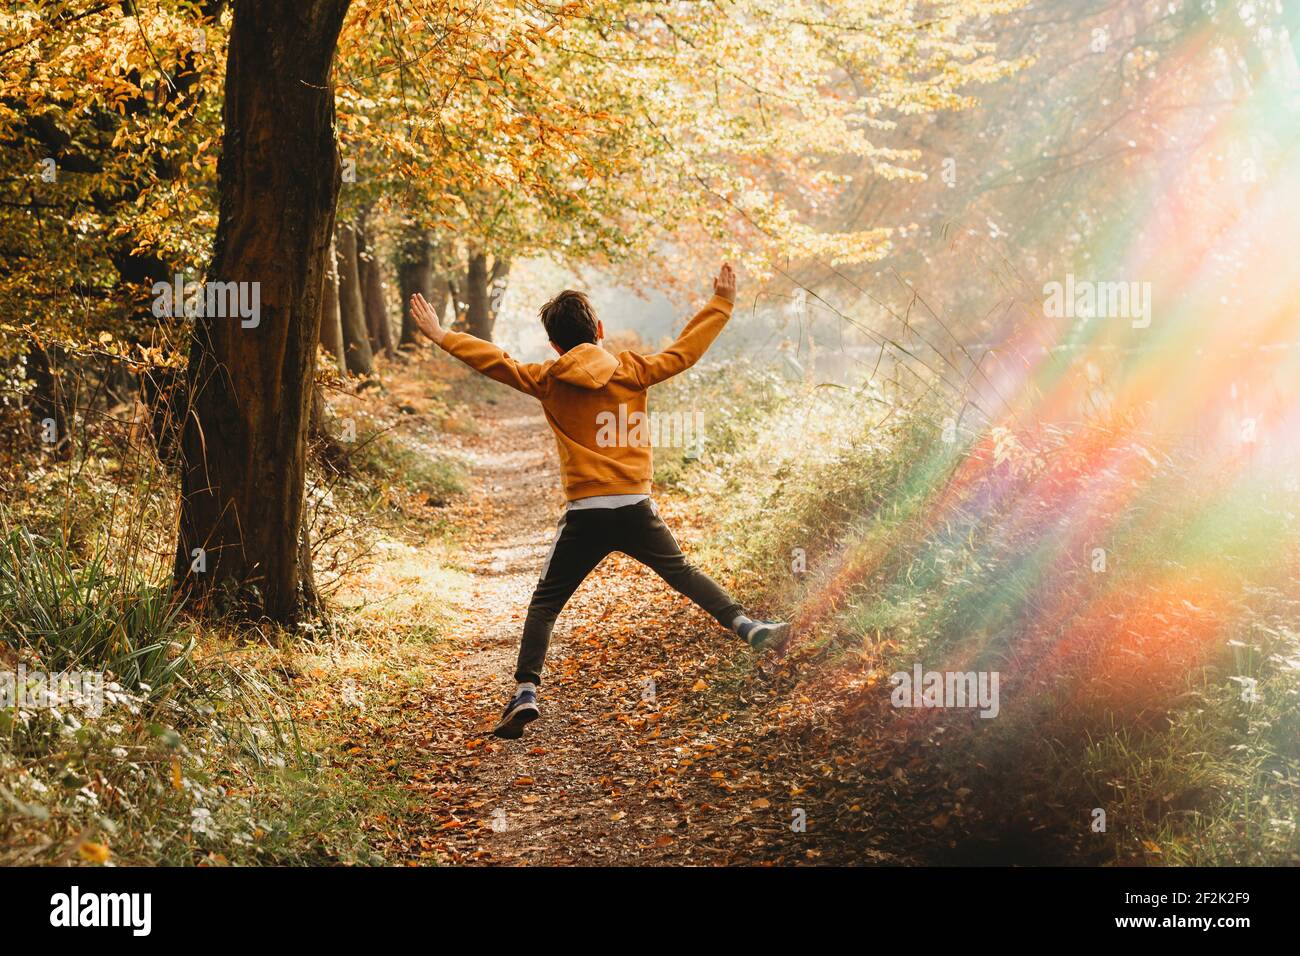 Junge springt in die Luft auf Pfad unter Baum mit regenbogenlicht Stockfoto